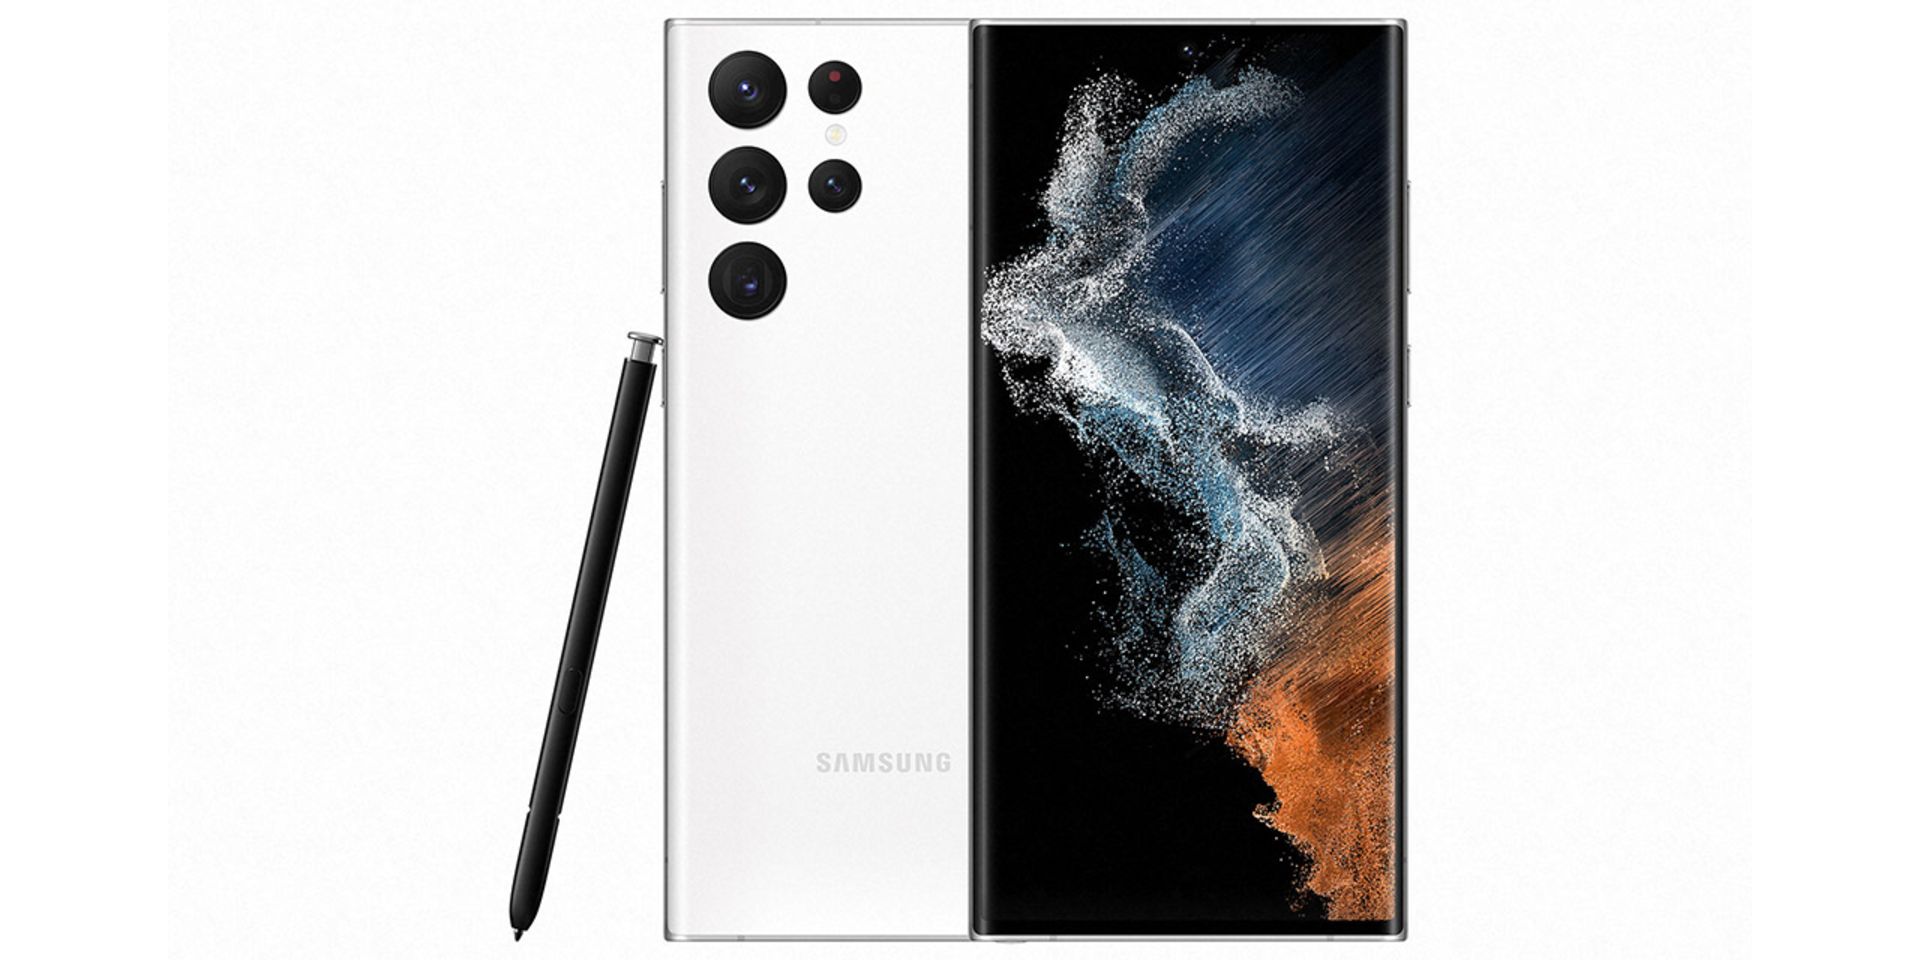 بهترین گوشی های 2022 - گلکسی اس ۲۲ اولترا | Galaxy S22 Ultra Samsung رنگ سفید